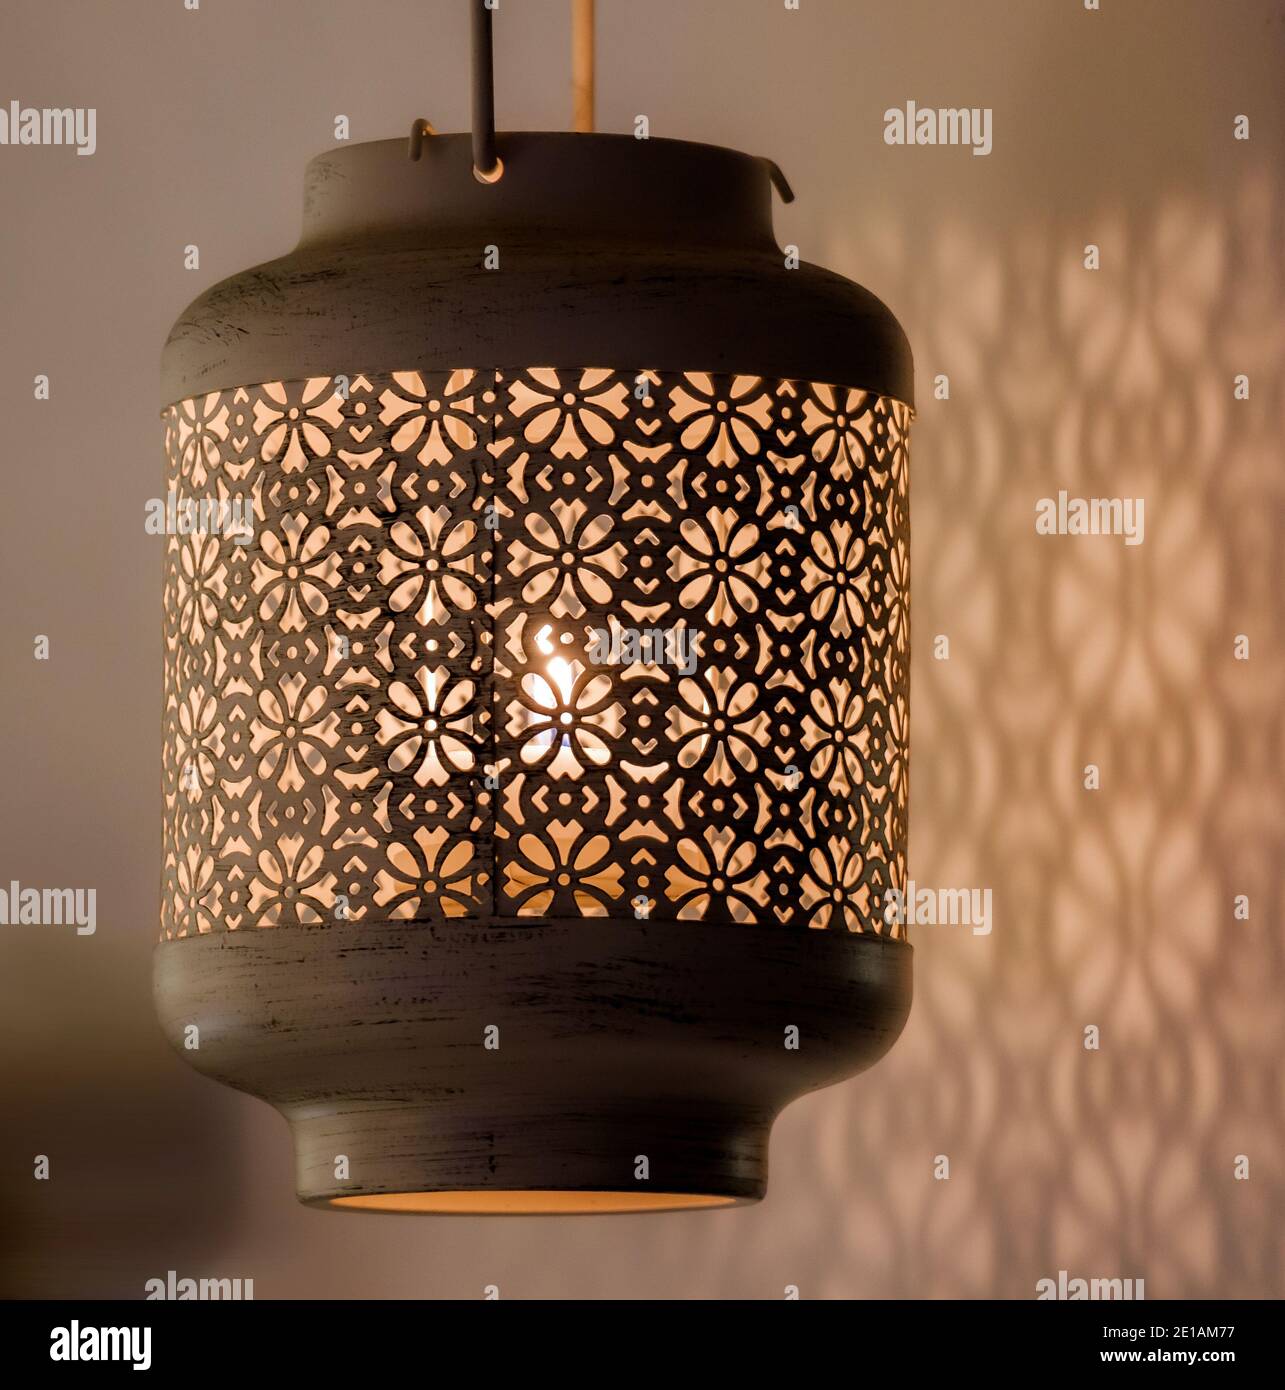 Kerzenlicht Lampe mit schönen detaillierten antiken Mustern Designs Gießen Schatten über der nahen Wand Stockfoto